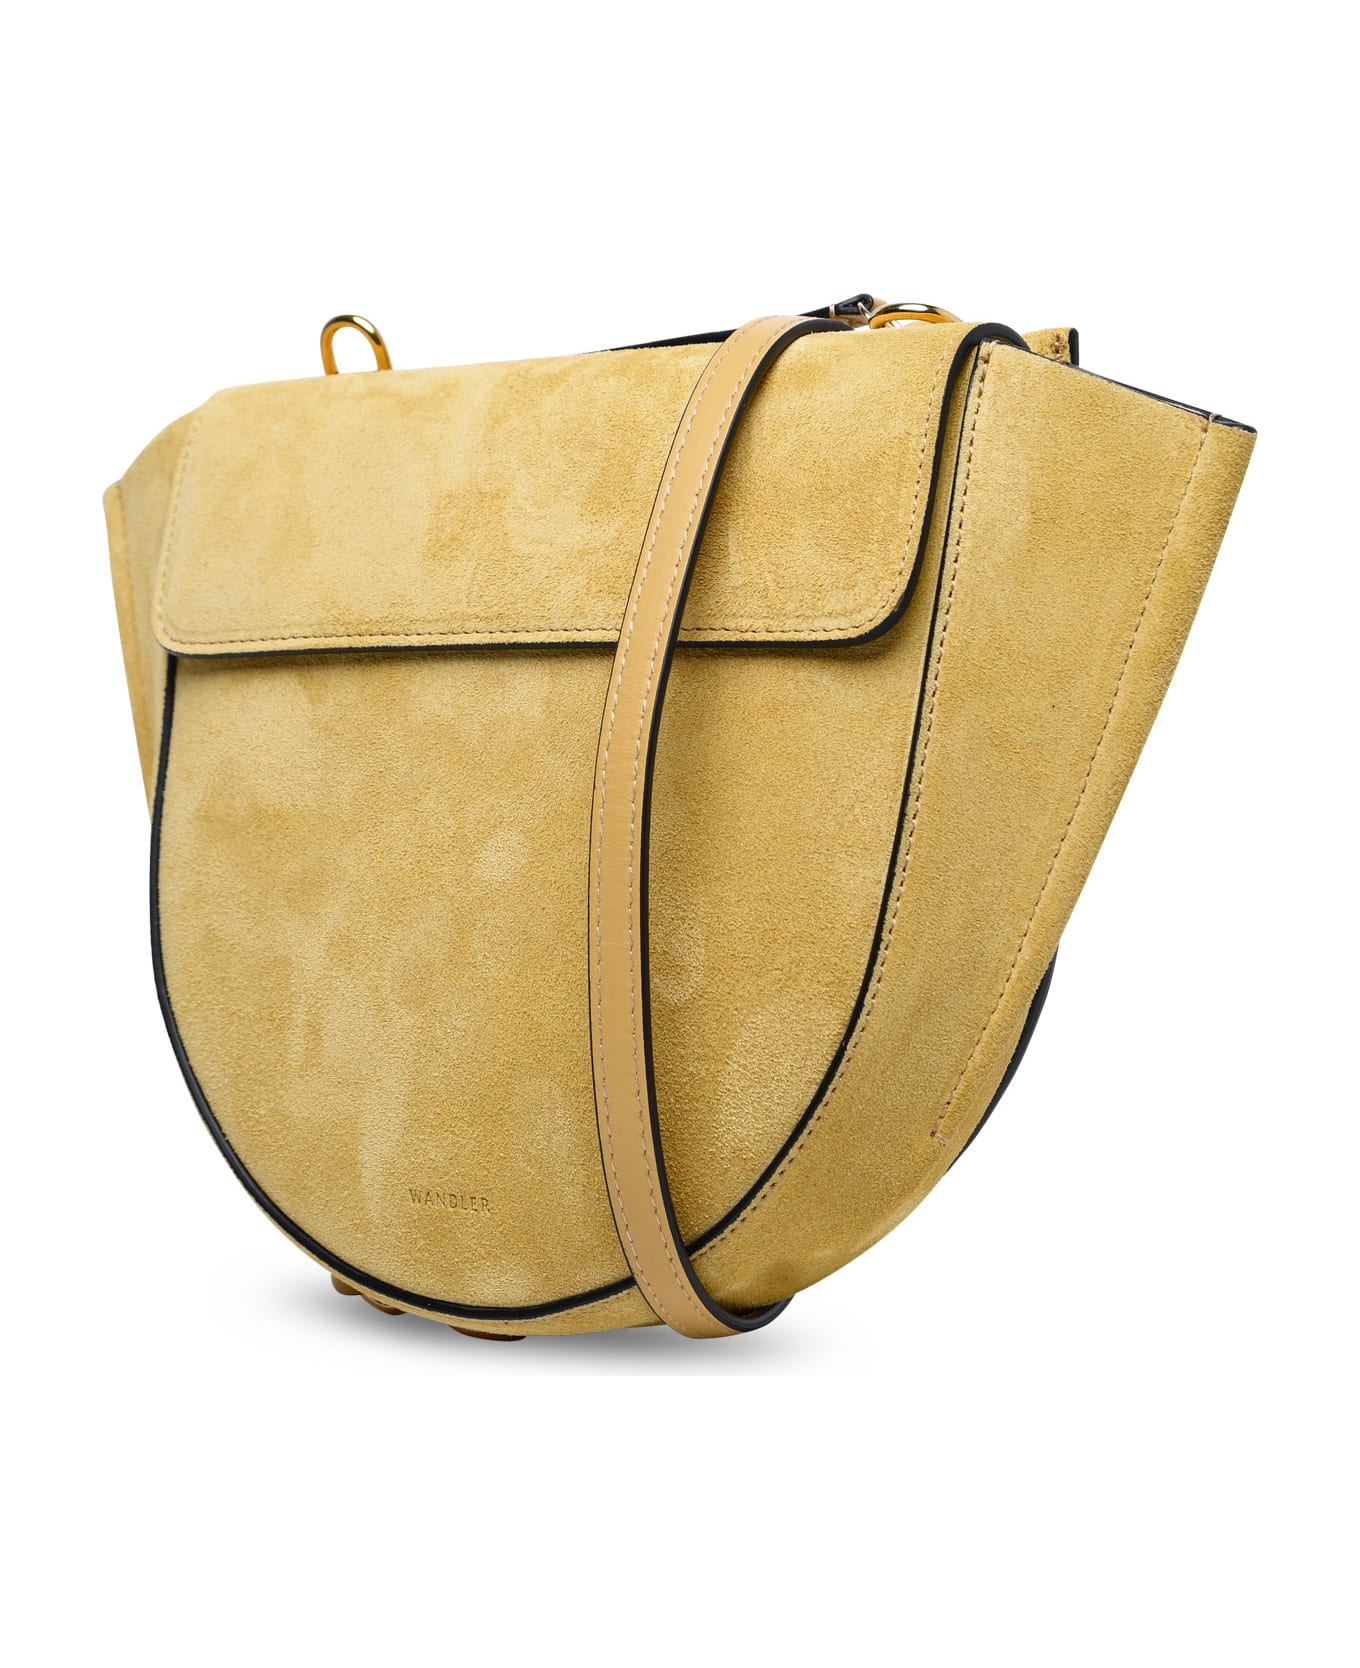 Wandler Mini 'hortensia' Sand Calf Leather Bag - Beige